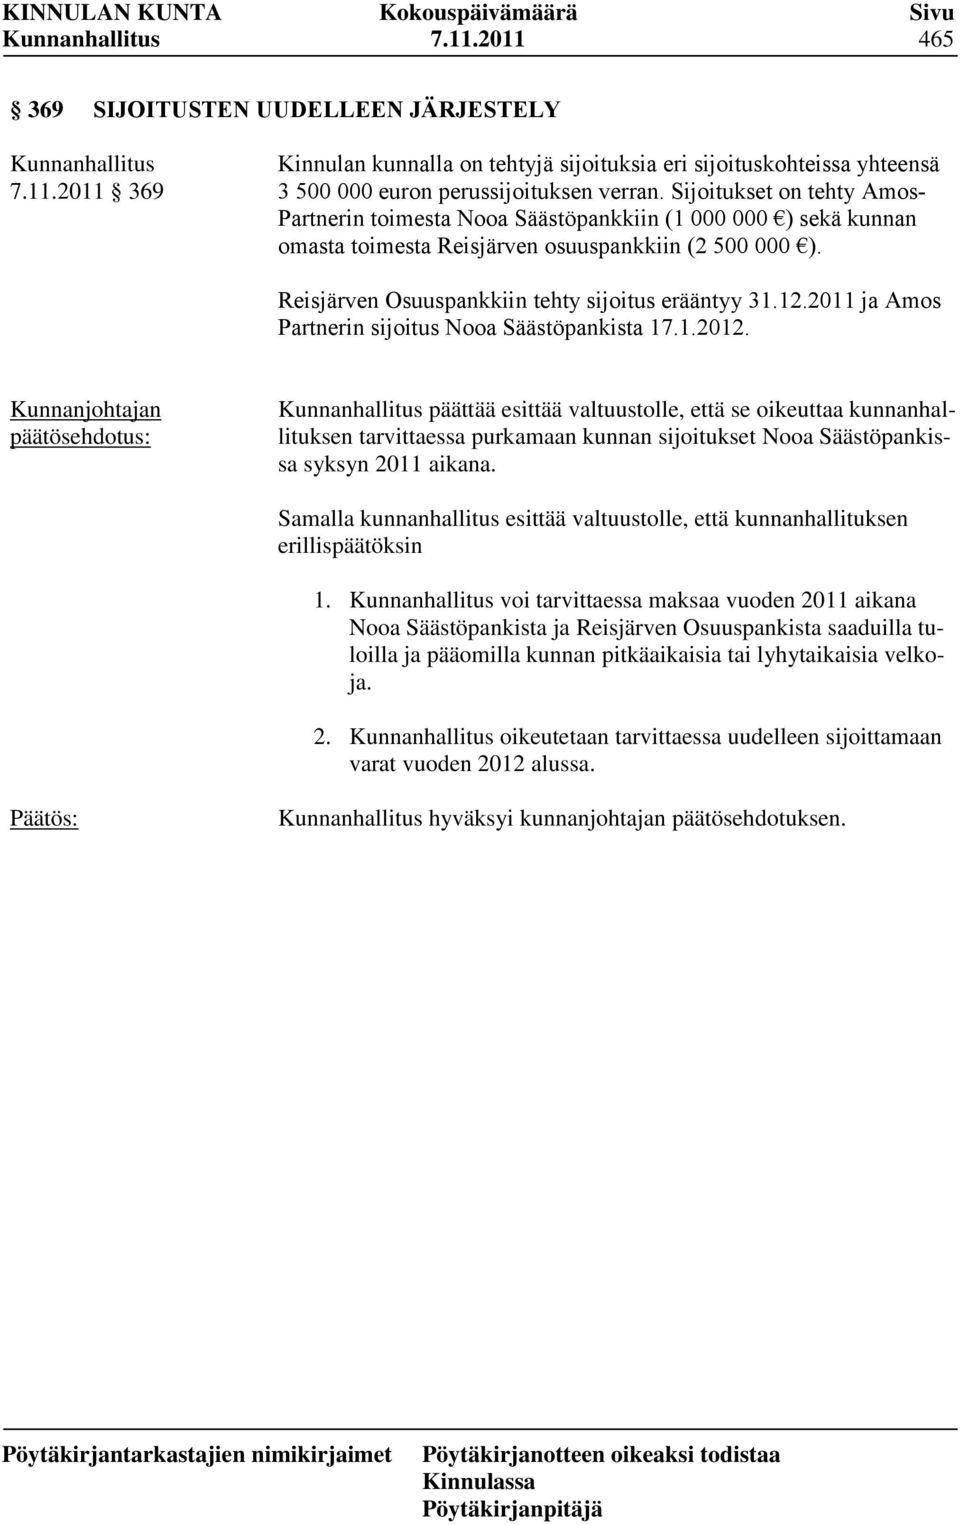 12.2011 ja Amos Partnerin sijoitus Nooa Säästöpankista 17.1.2012.